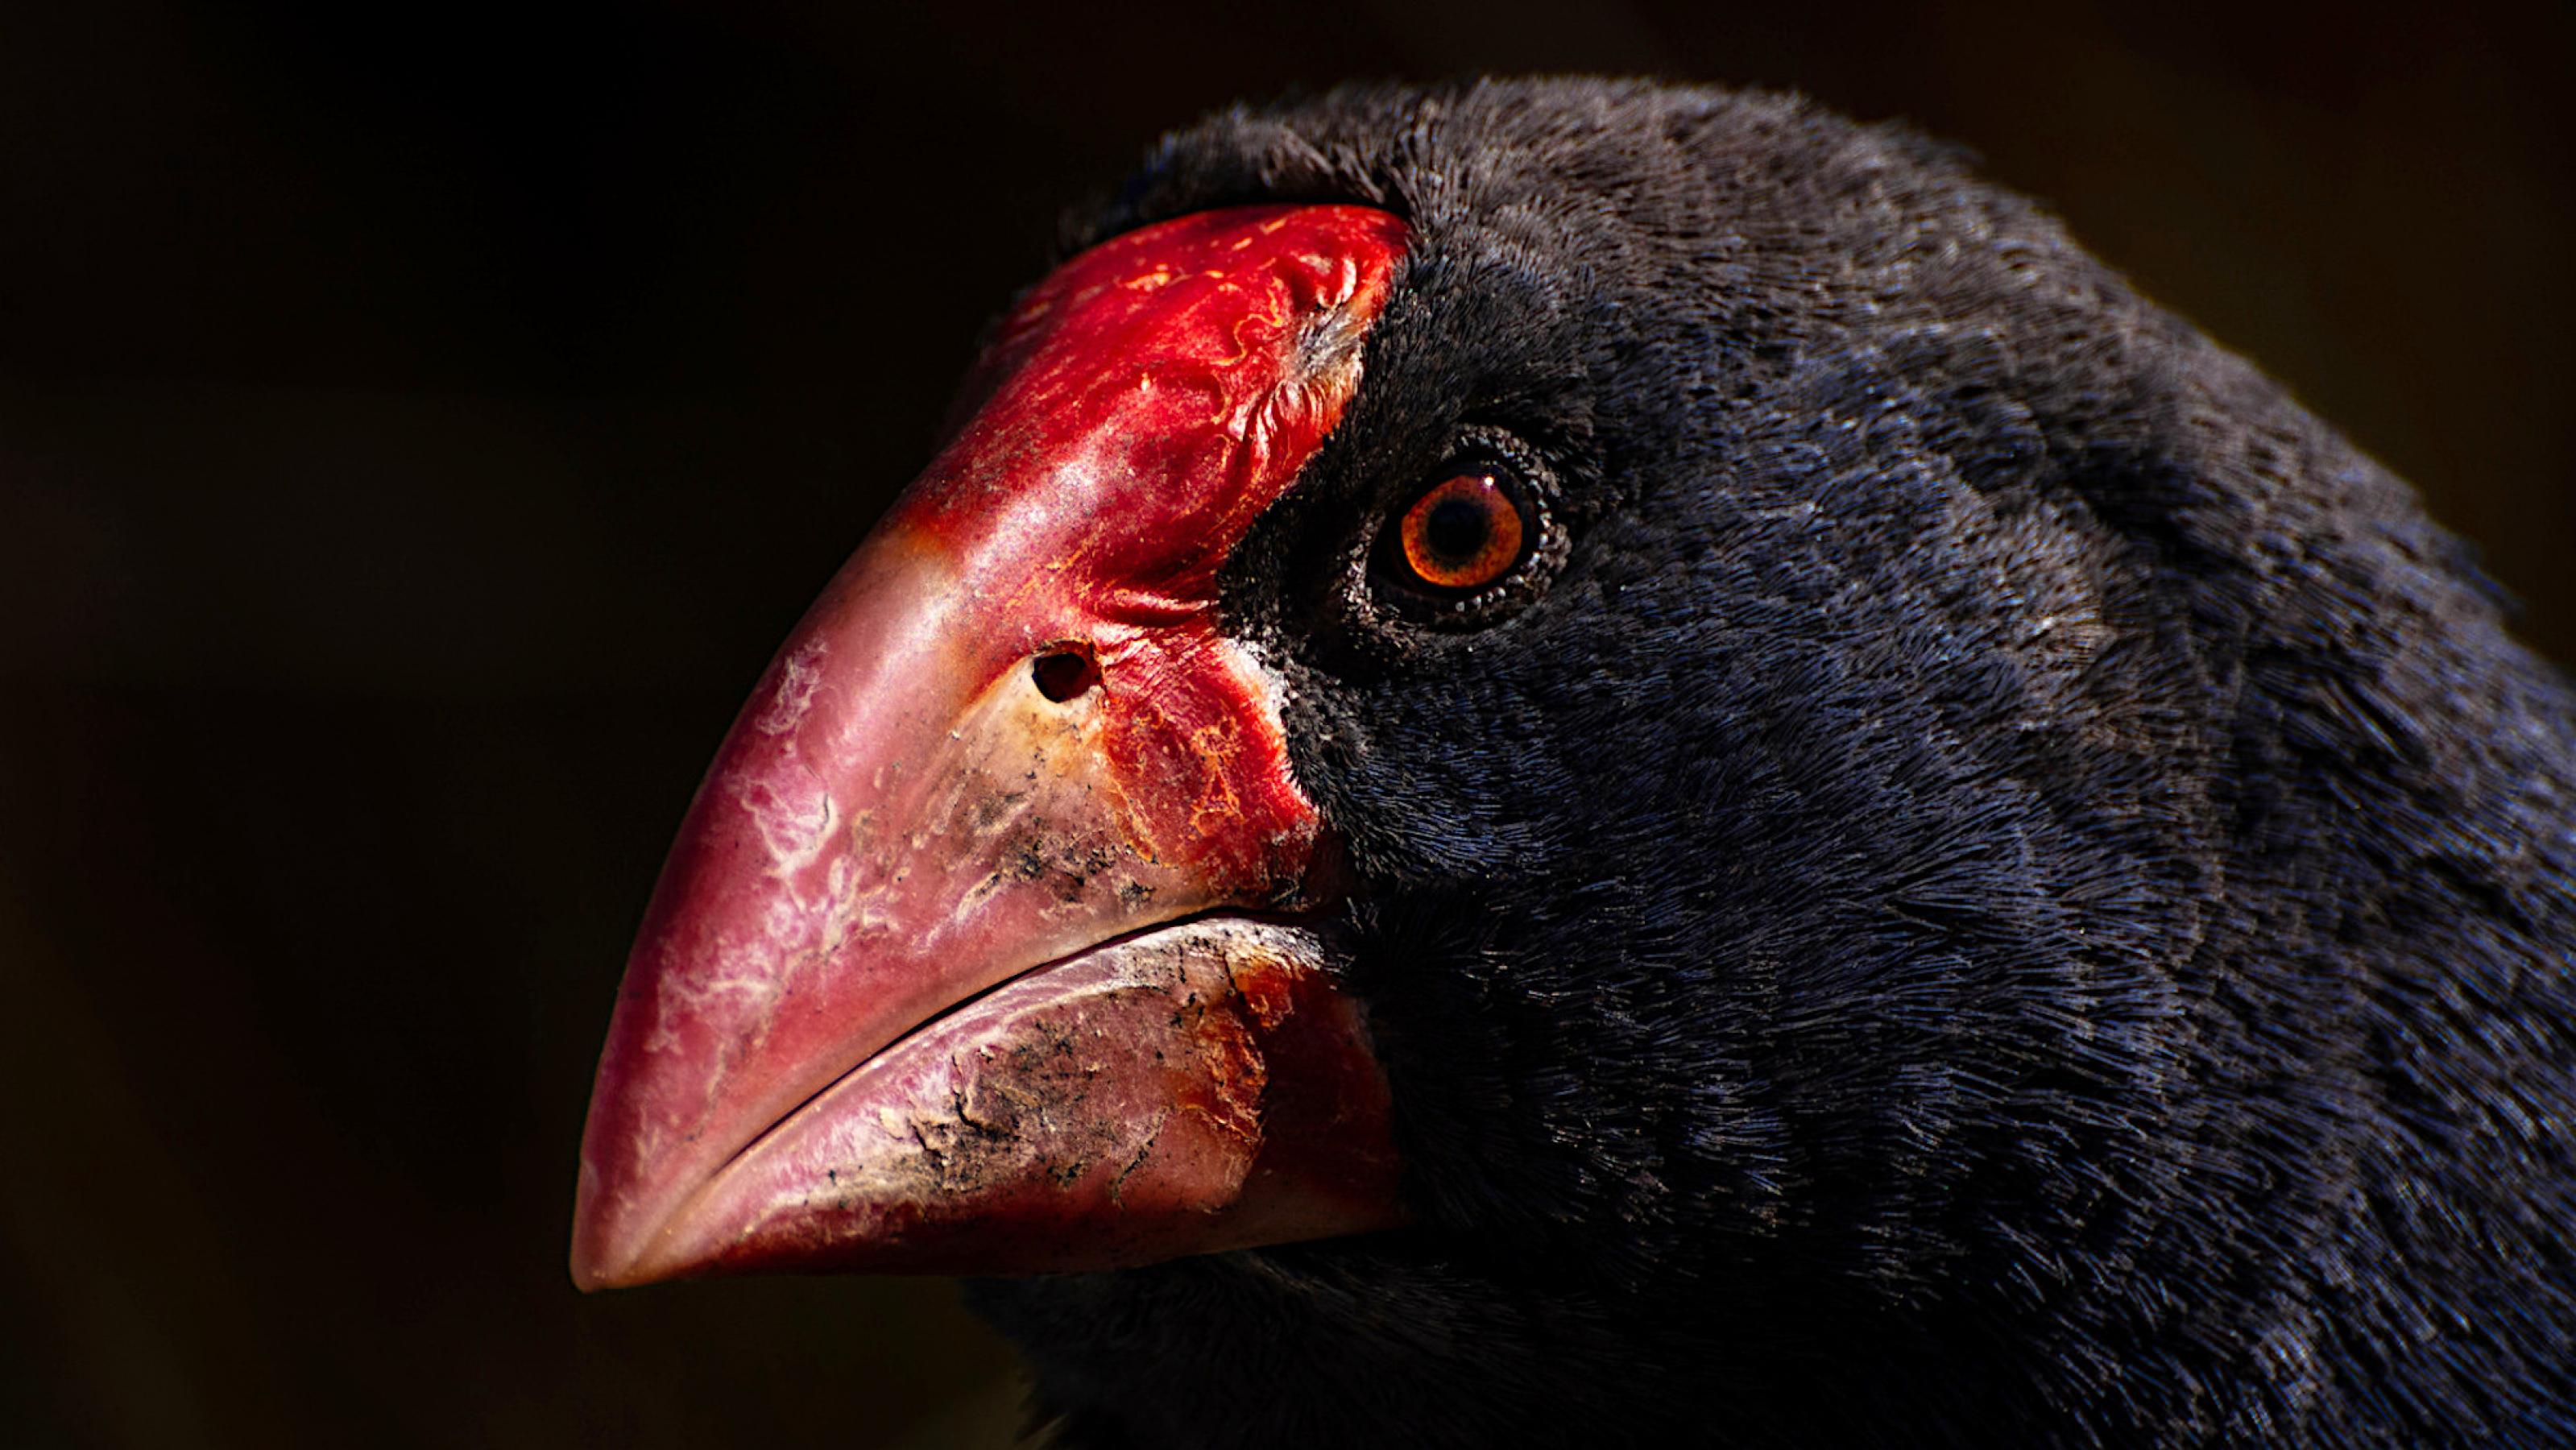 Dunkler Vogelkopf, der große rote Schnabel leuchtet hell vor dunklem Hintergrund.